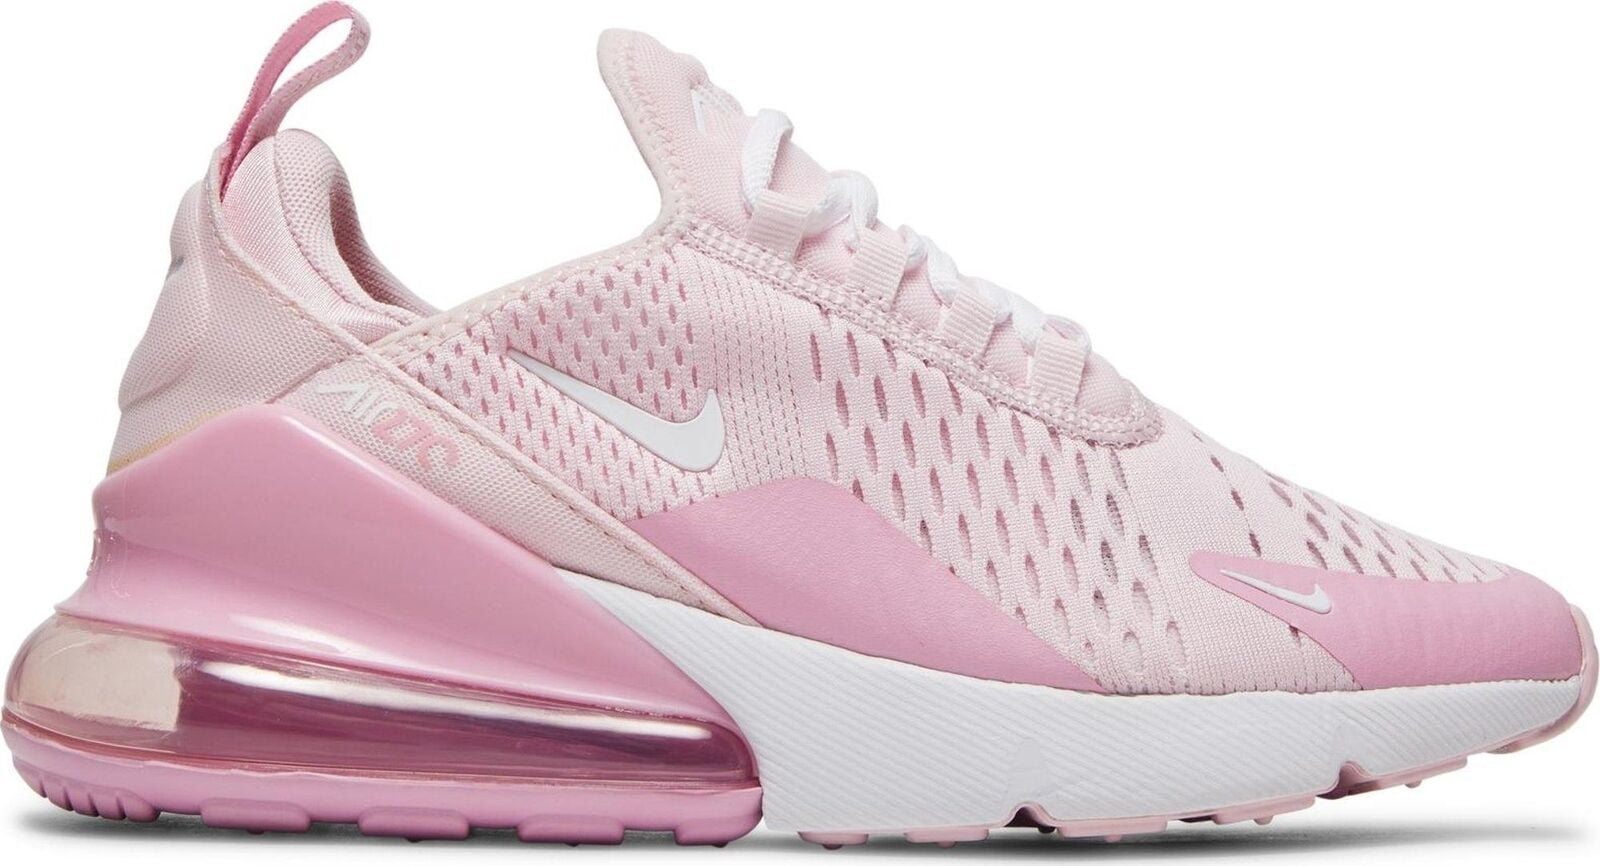 Big Kids Nike Air Max 270 Pink Foamwhite Pink Rise Cv9645 600 7